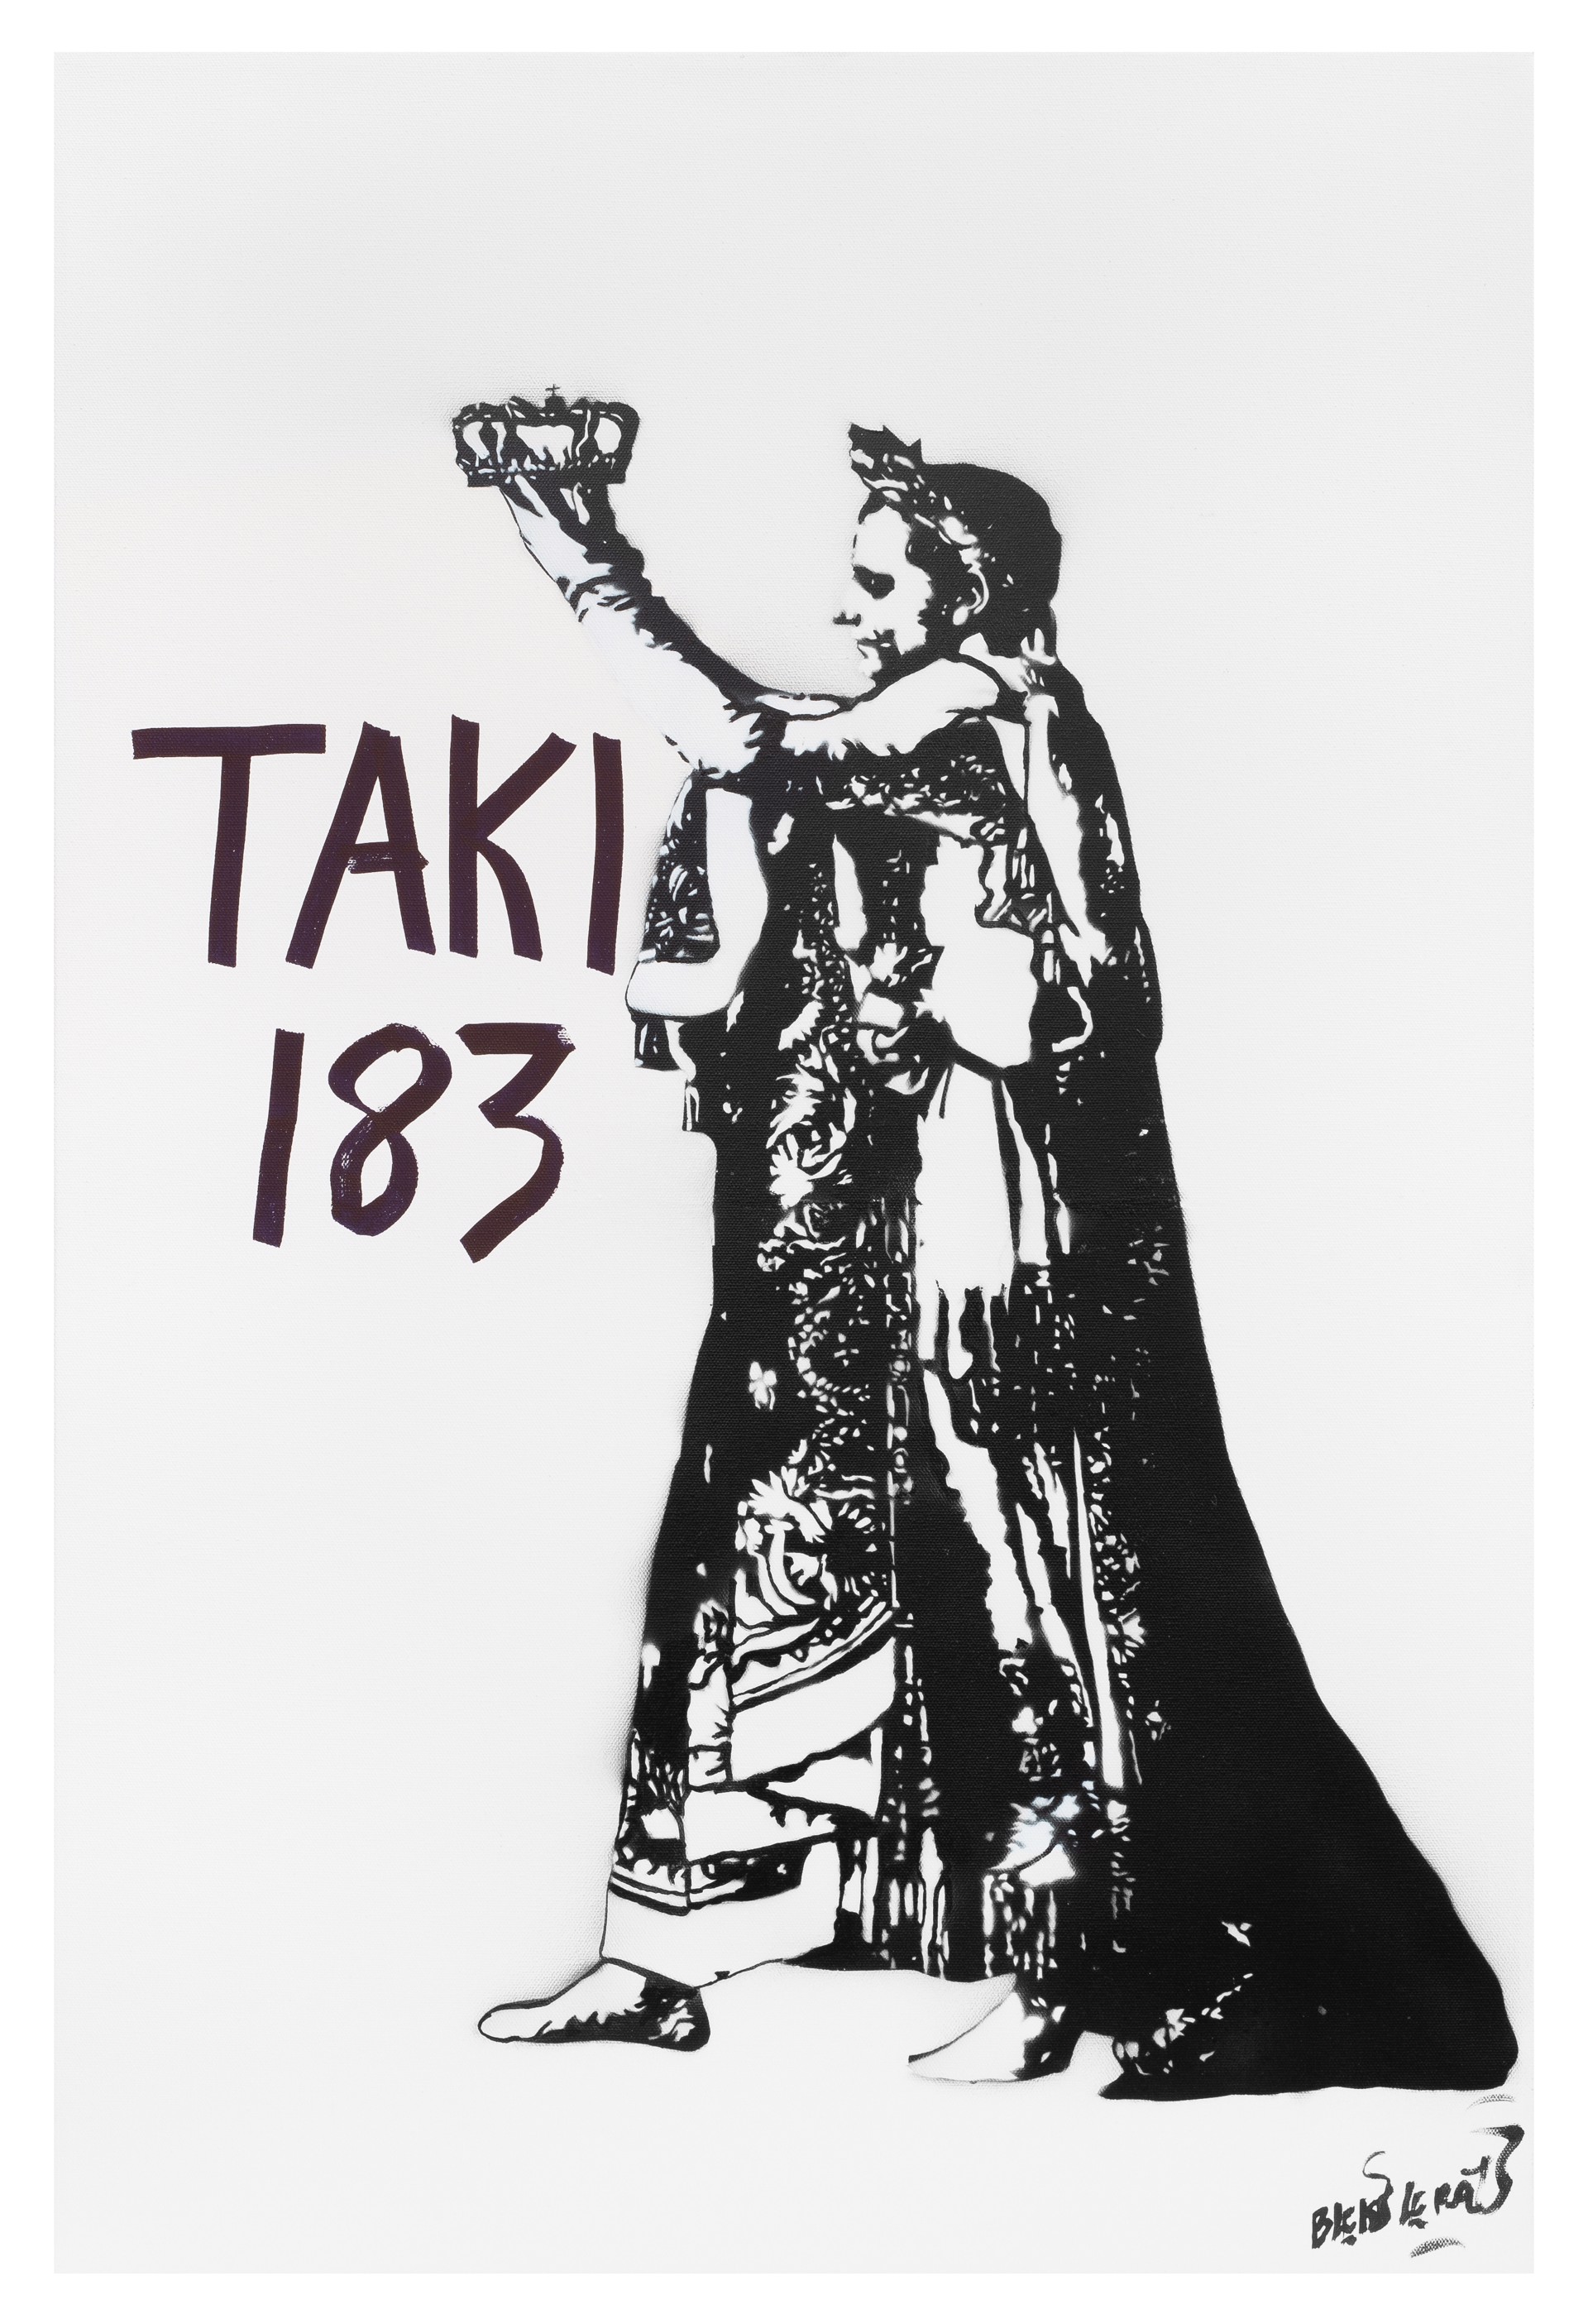 Emperor Taki 183 (3) by Blek le Rat x Taki 183